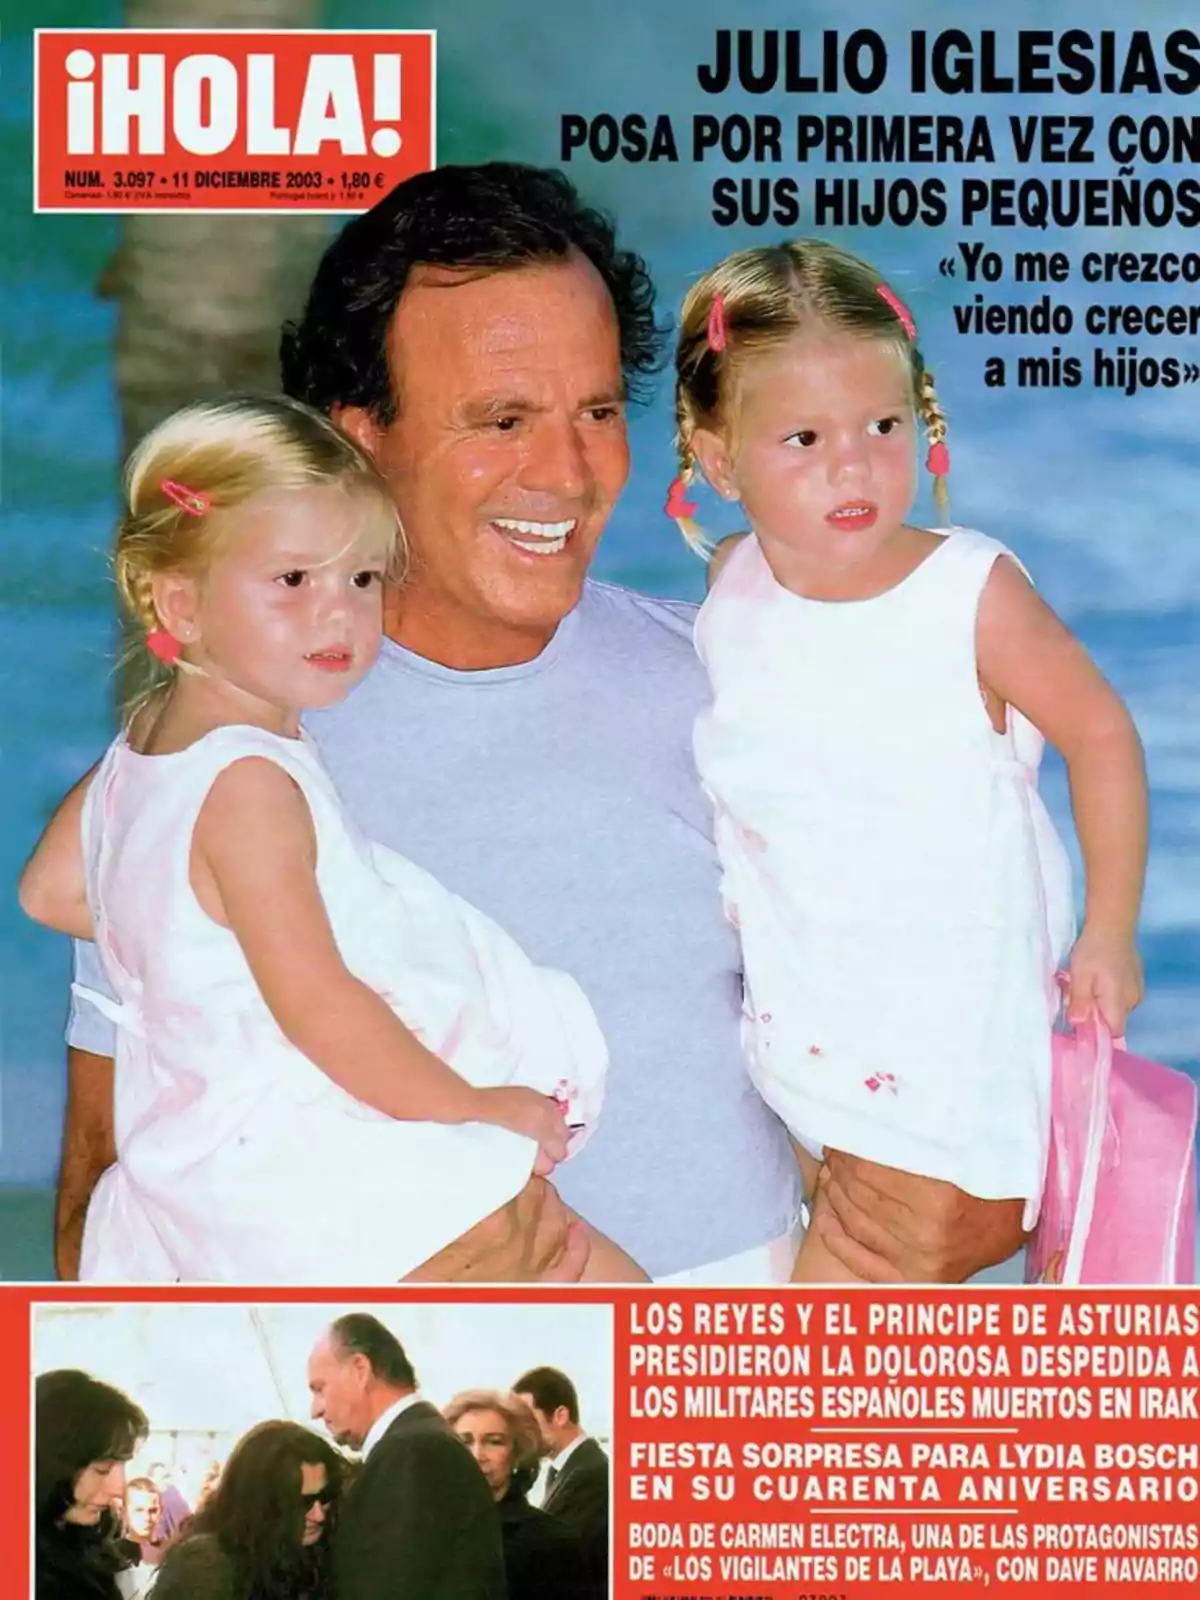 Portada de la revista ¡HOLA! del 11 de diciembre de 2003, con Julio Iglesias posando por primera vez con sus hijos pequeños.